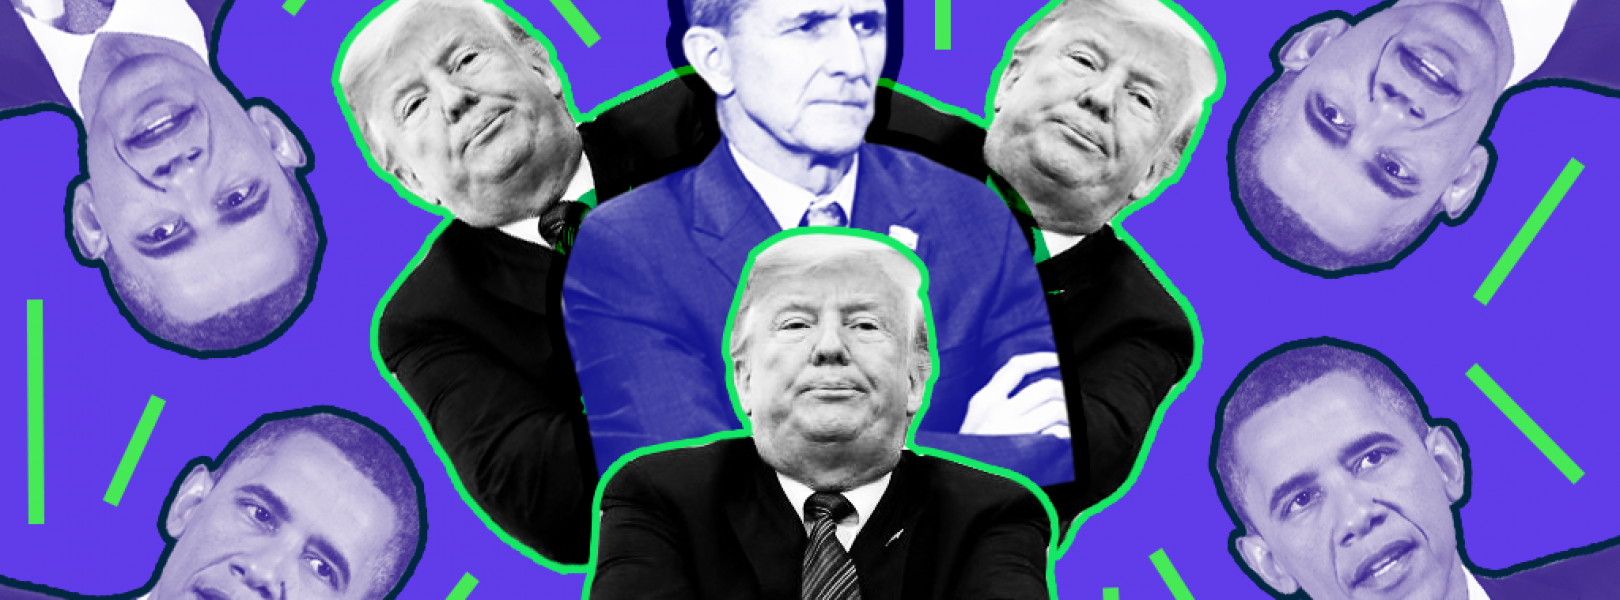 Trump, Flynn and Obama